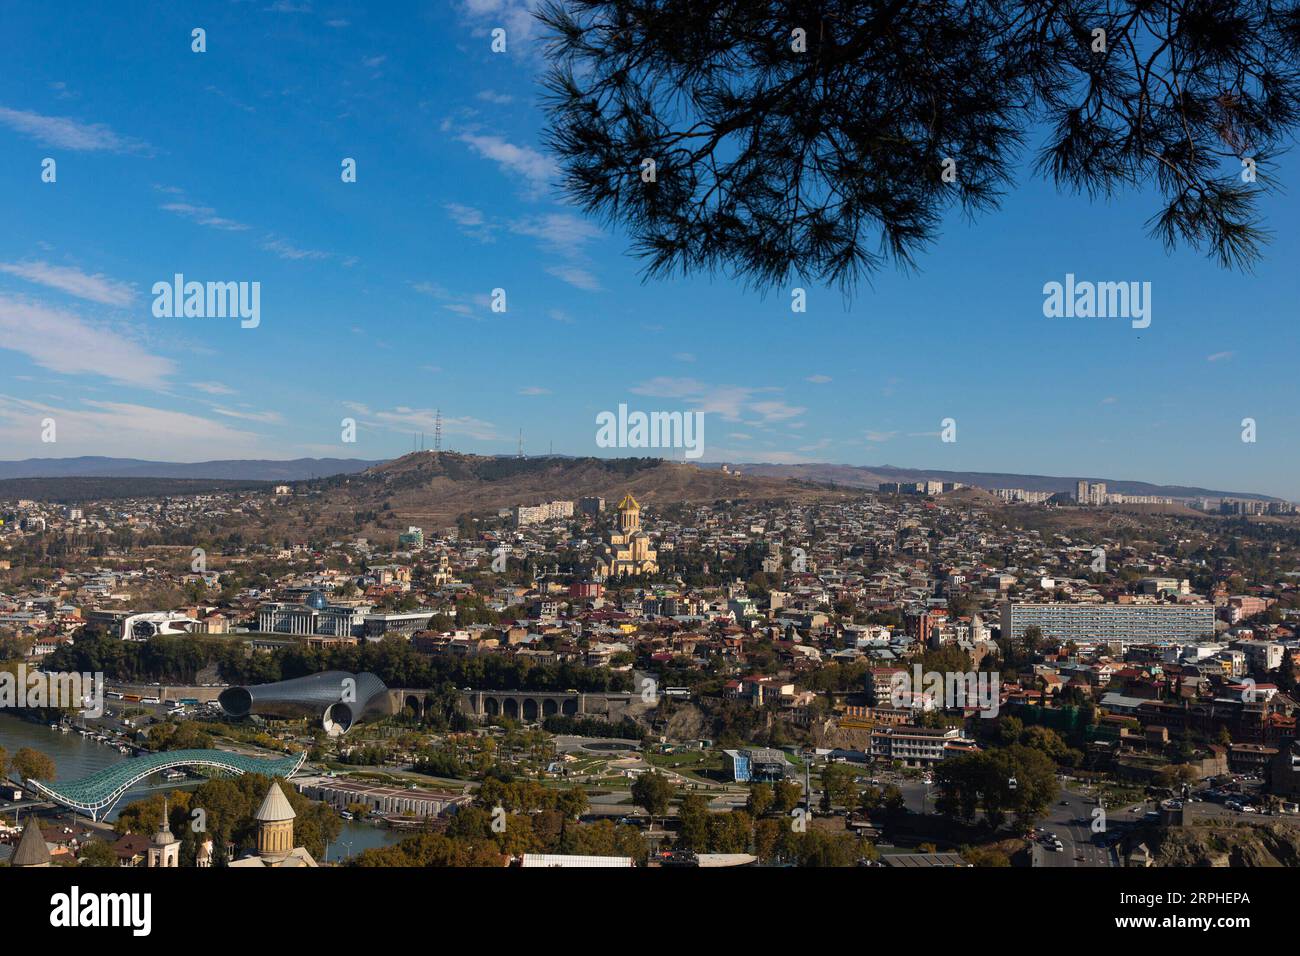 191106 -- TBILISI, Nov. 6, 2019 -- Photo taken on Nov. 6, 2019 shows a view of Tbilisi, capital of Geogria.  GEORGIA-TBILISI-SCENERY BaixXueqi PUBLICATIONxNOTxINxCHN Stock Photo